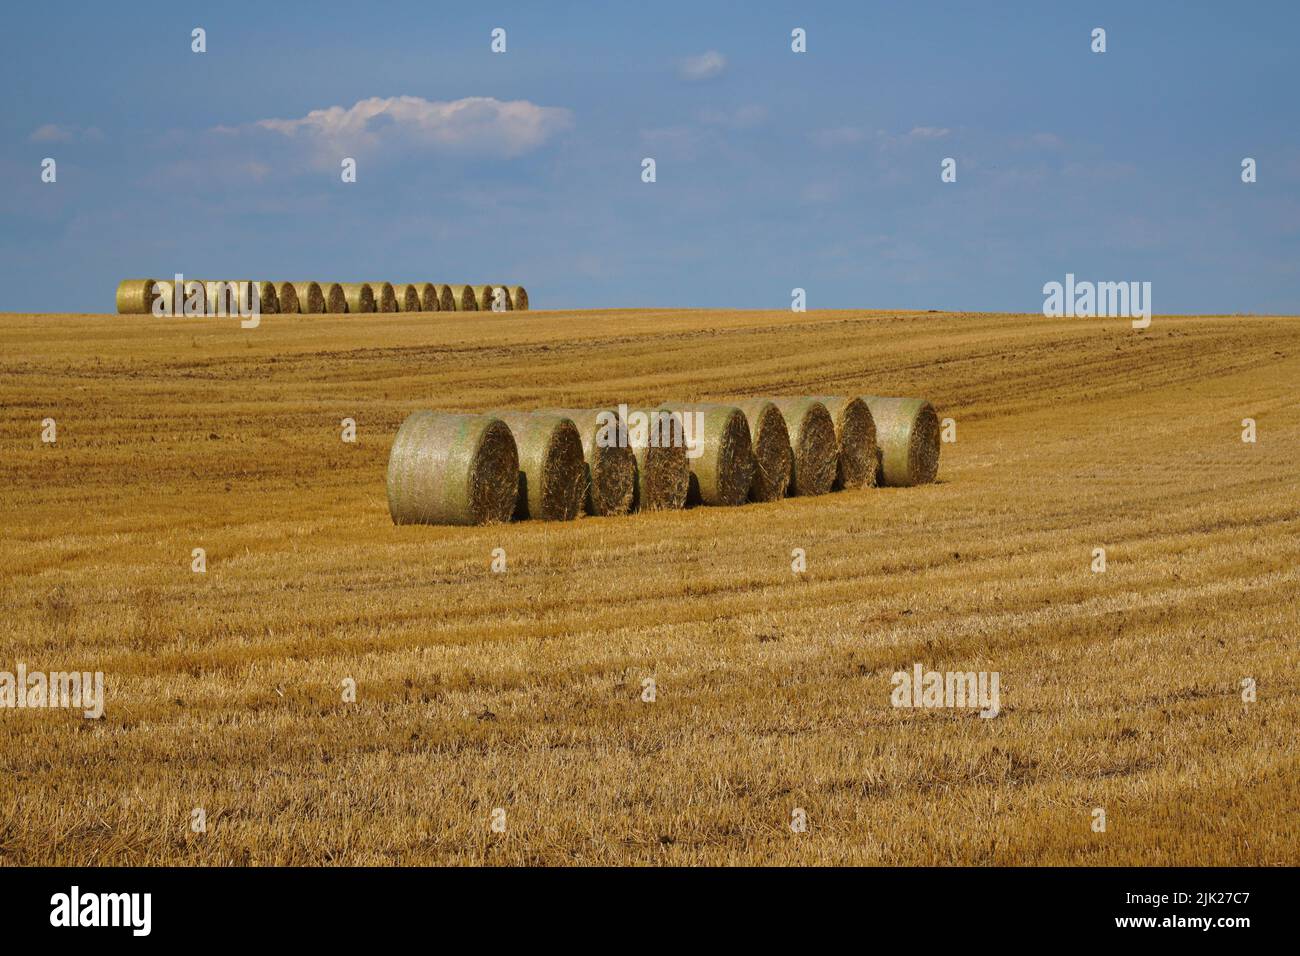 Hilera de fardos redondos de paja en una hilera en un campo de trigo durante la cosecha bajo un cielo azul Foto de stock